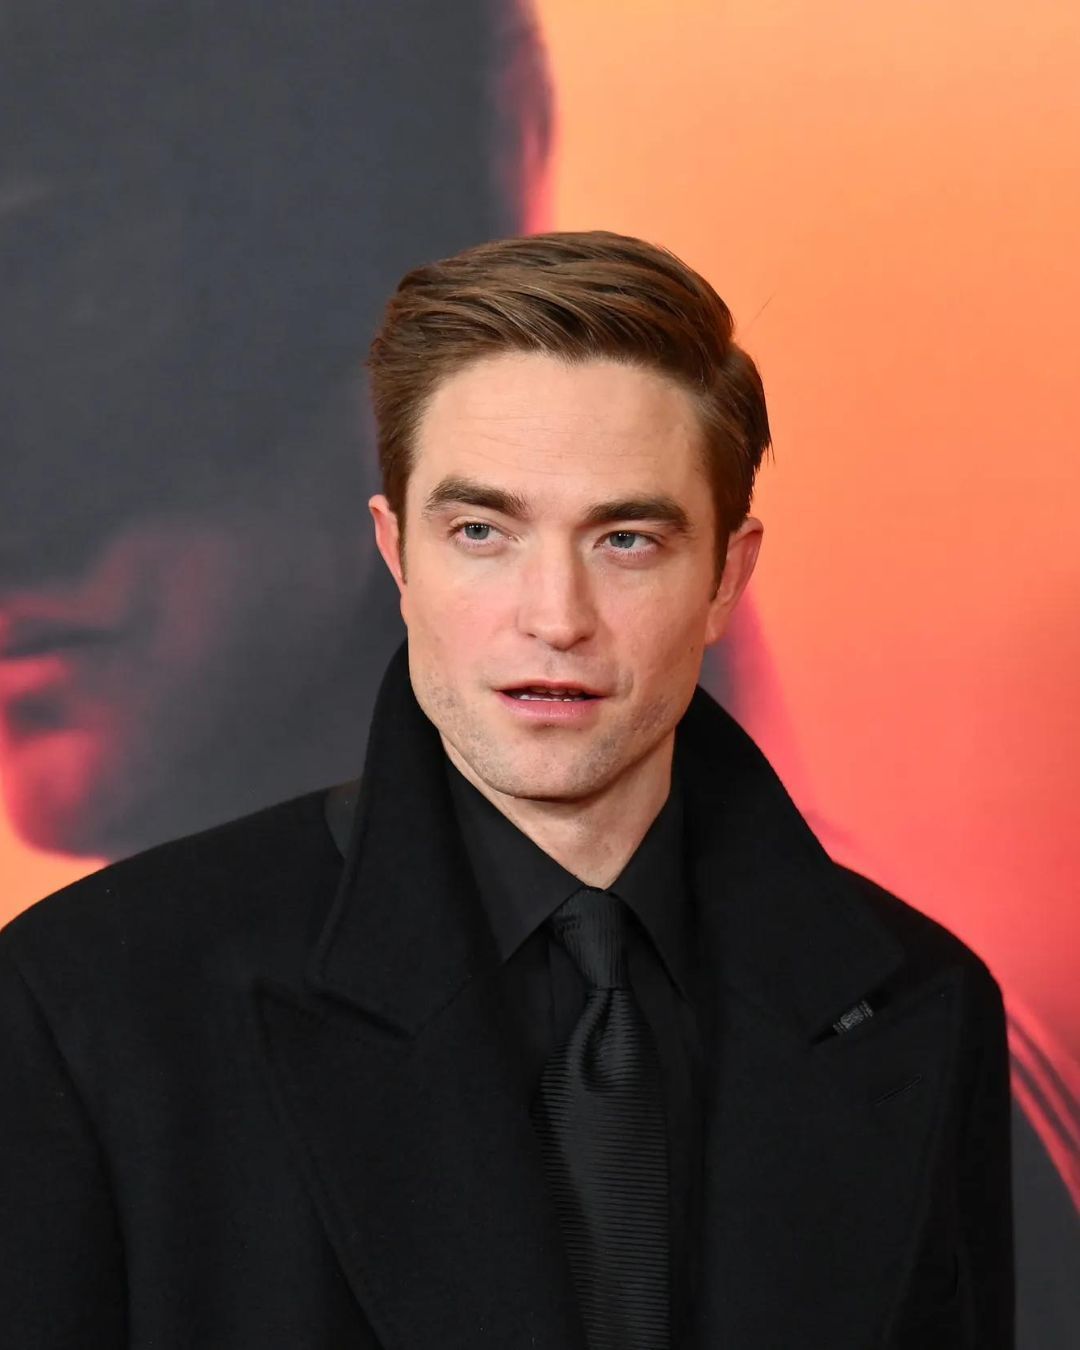 I migliori look di Robert Pattinson In occasione del suo compleanno, celebriamo lo stile dell’attore britannico